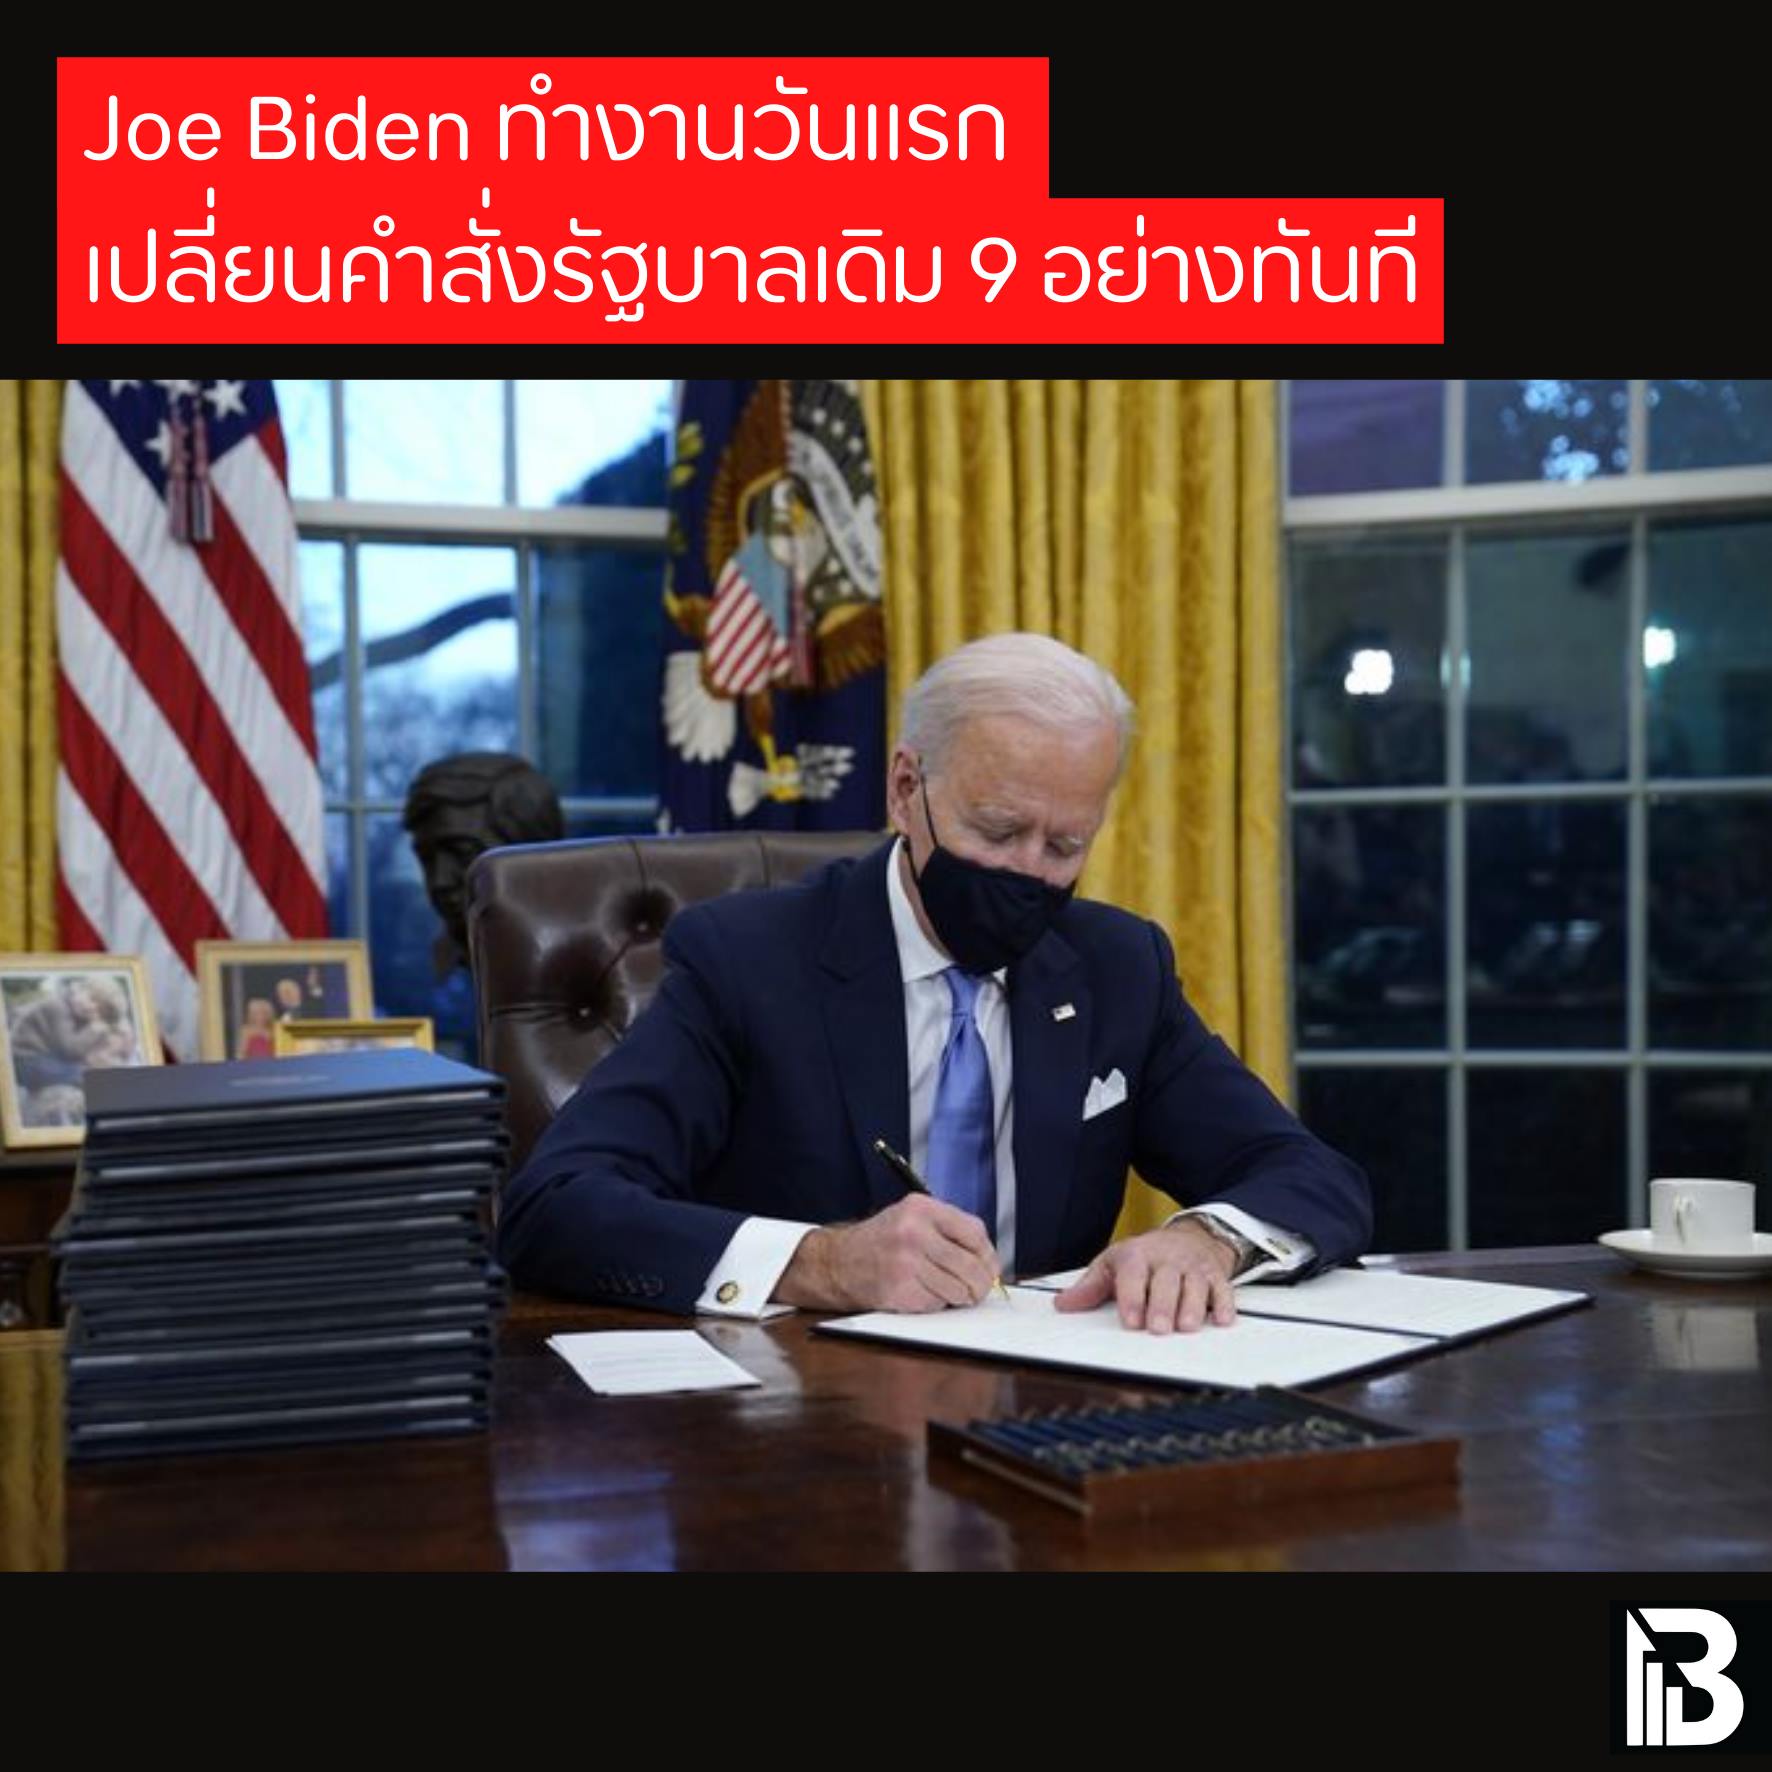 Joe Biden ทำงานวันแรก เปลี่ยนคำสั่งรัฐบาลเดิม 9 อย่างทันที